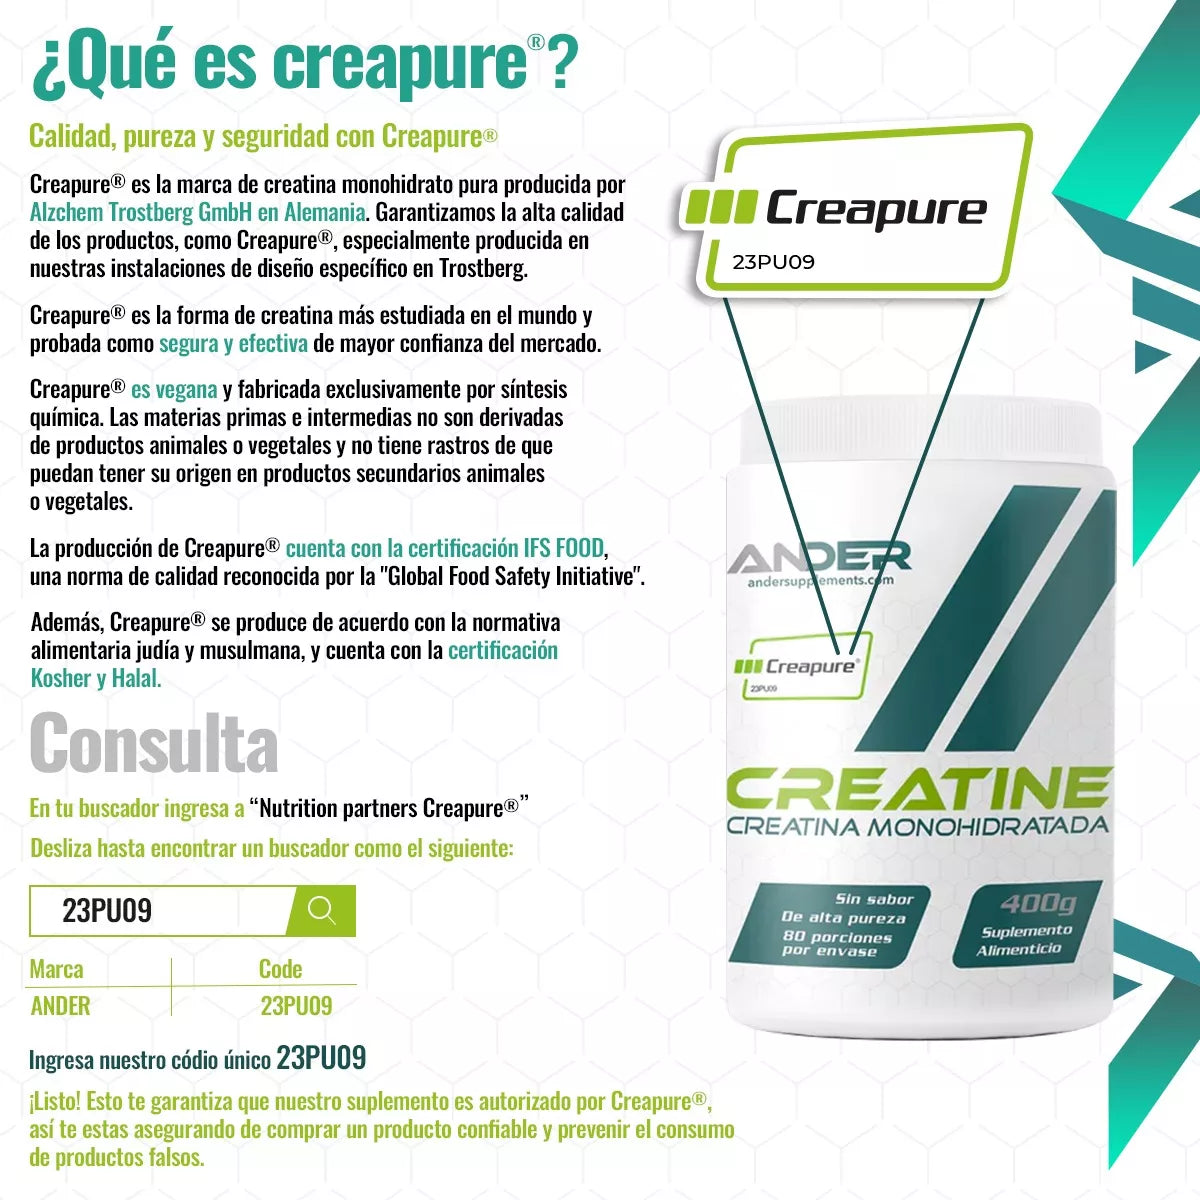 Creatina Monohidratada con certificación Creapure® en Bolsa 200g